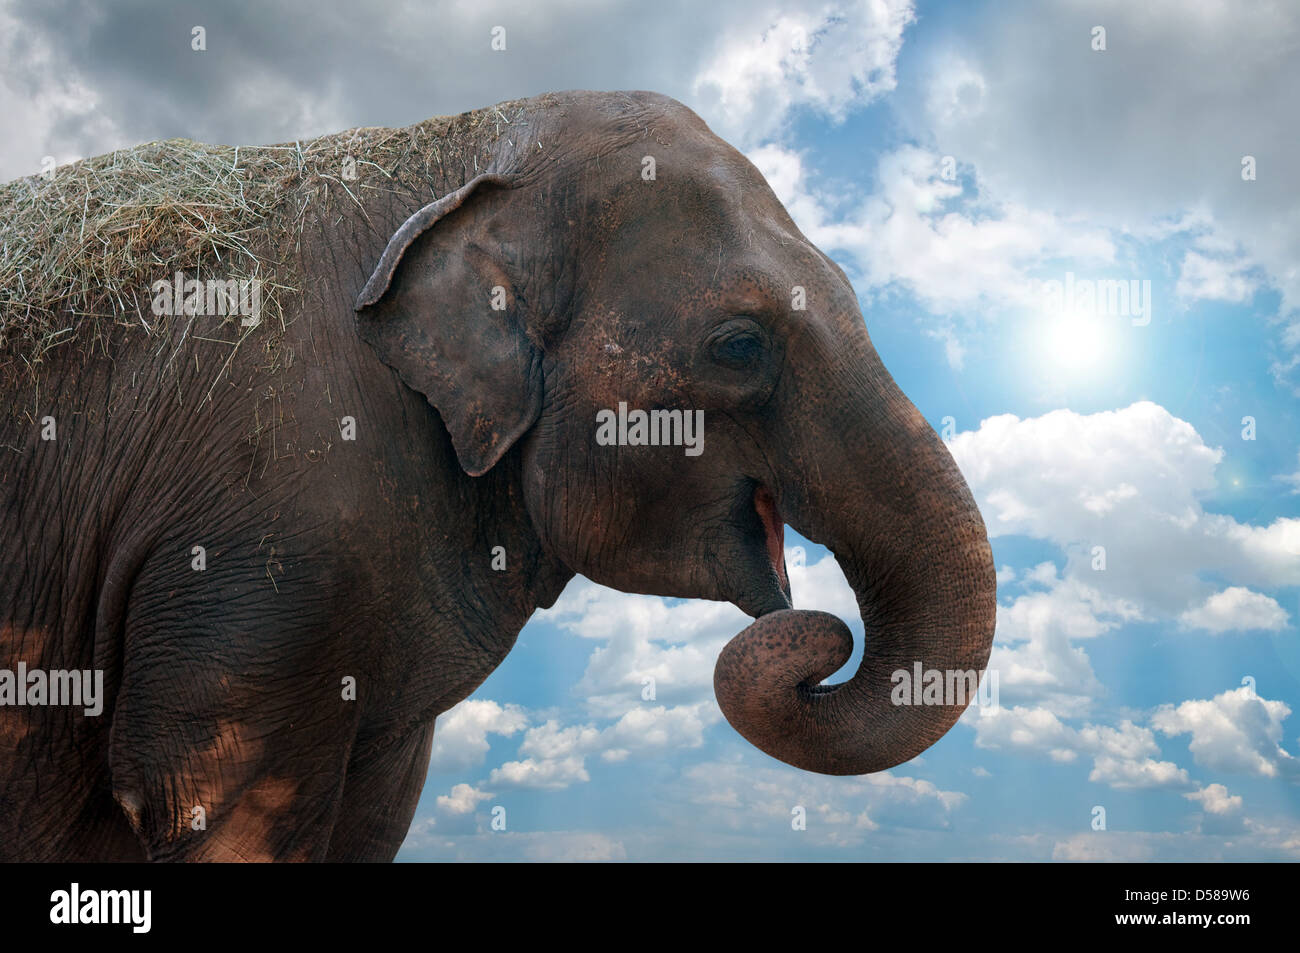 Female elephant head against the cloudy sky. Stock Photo